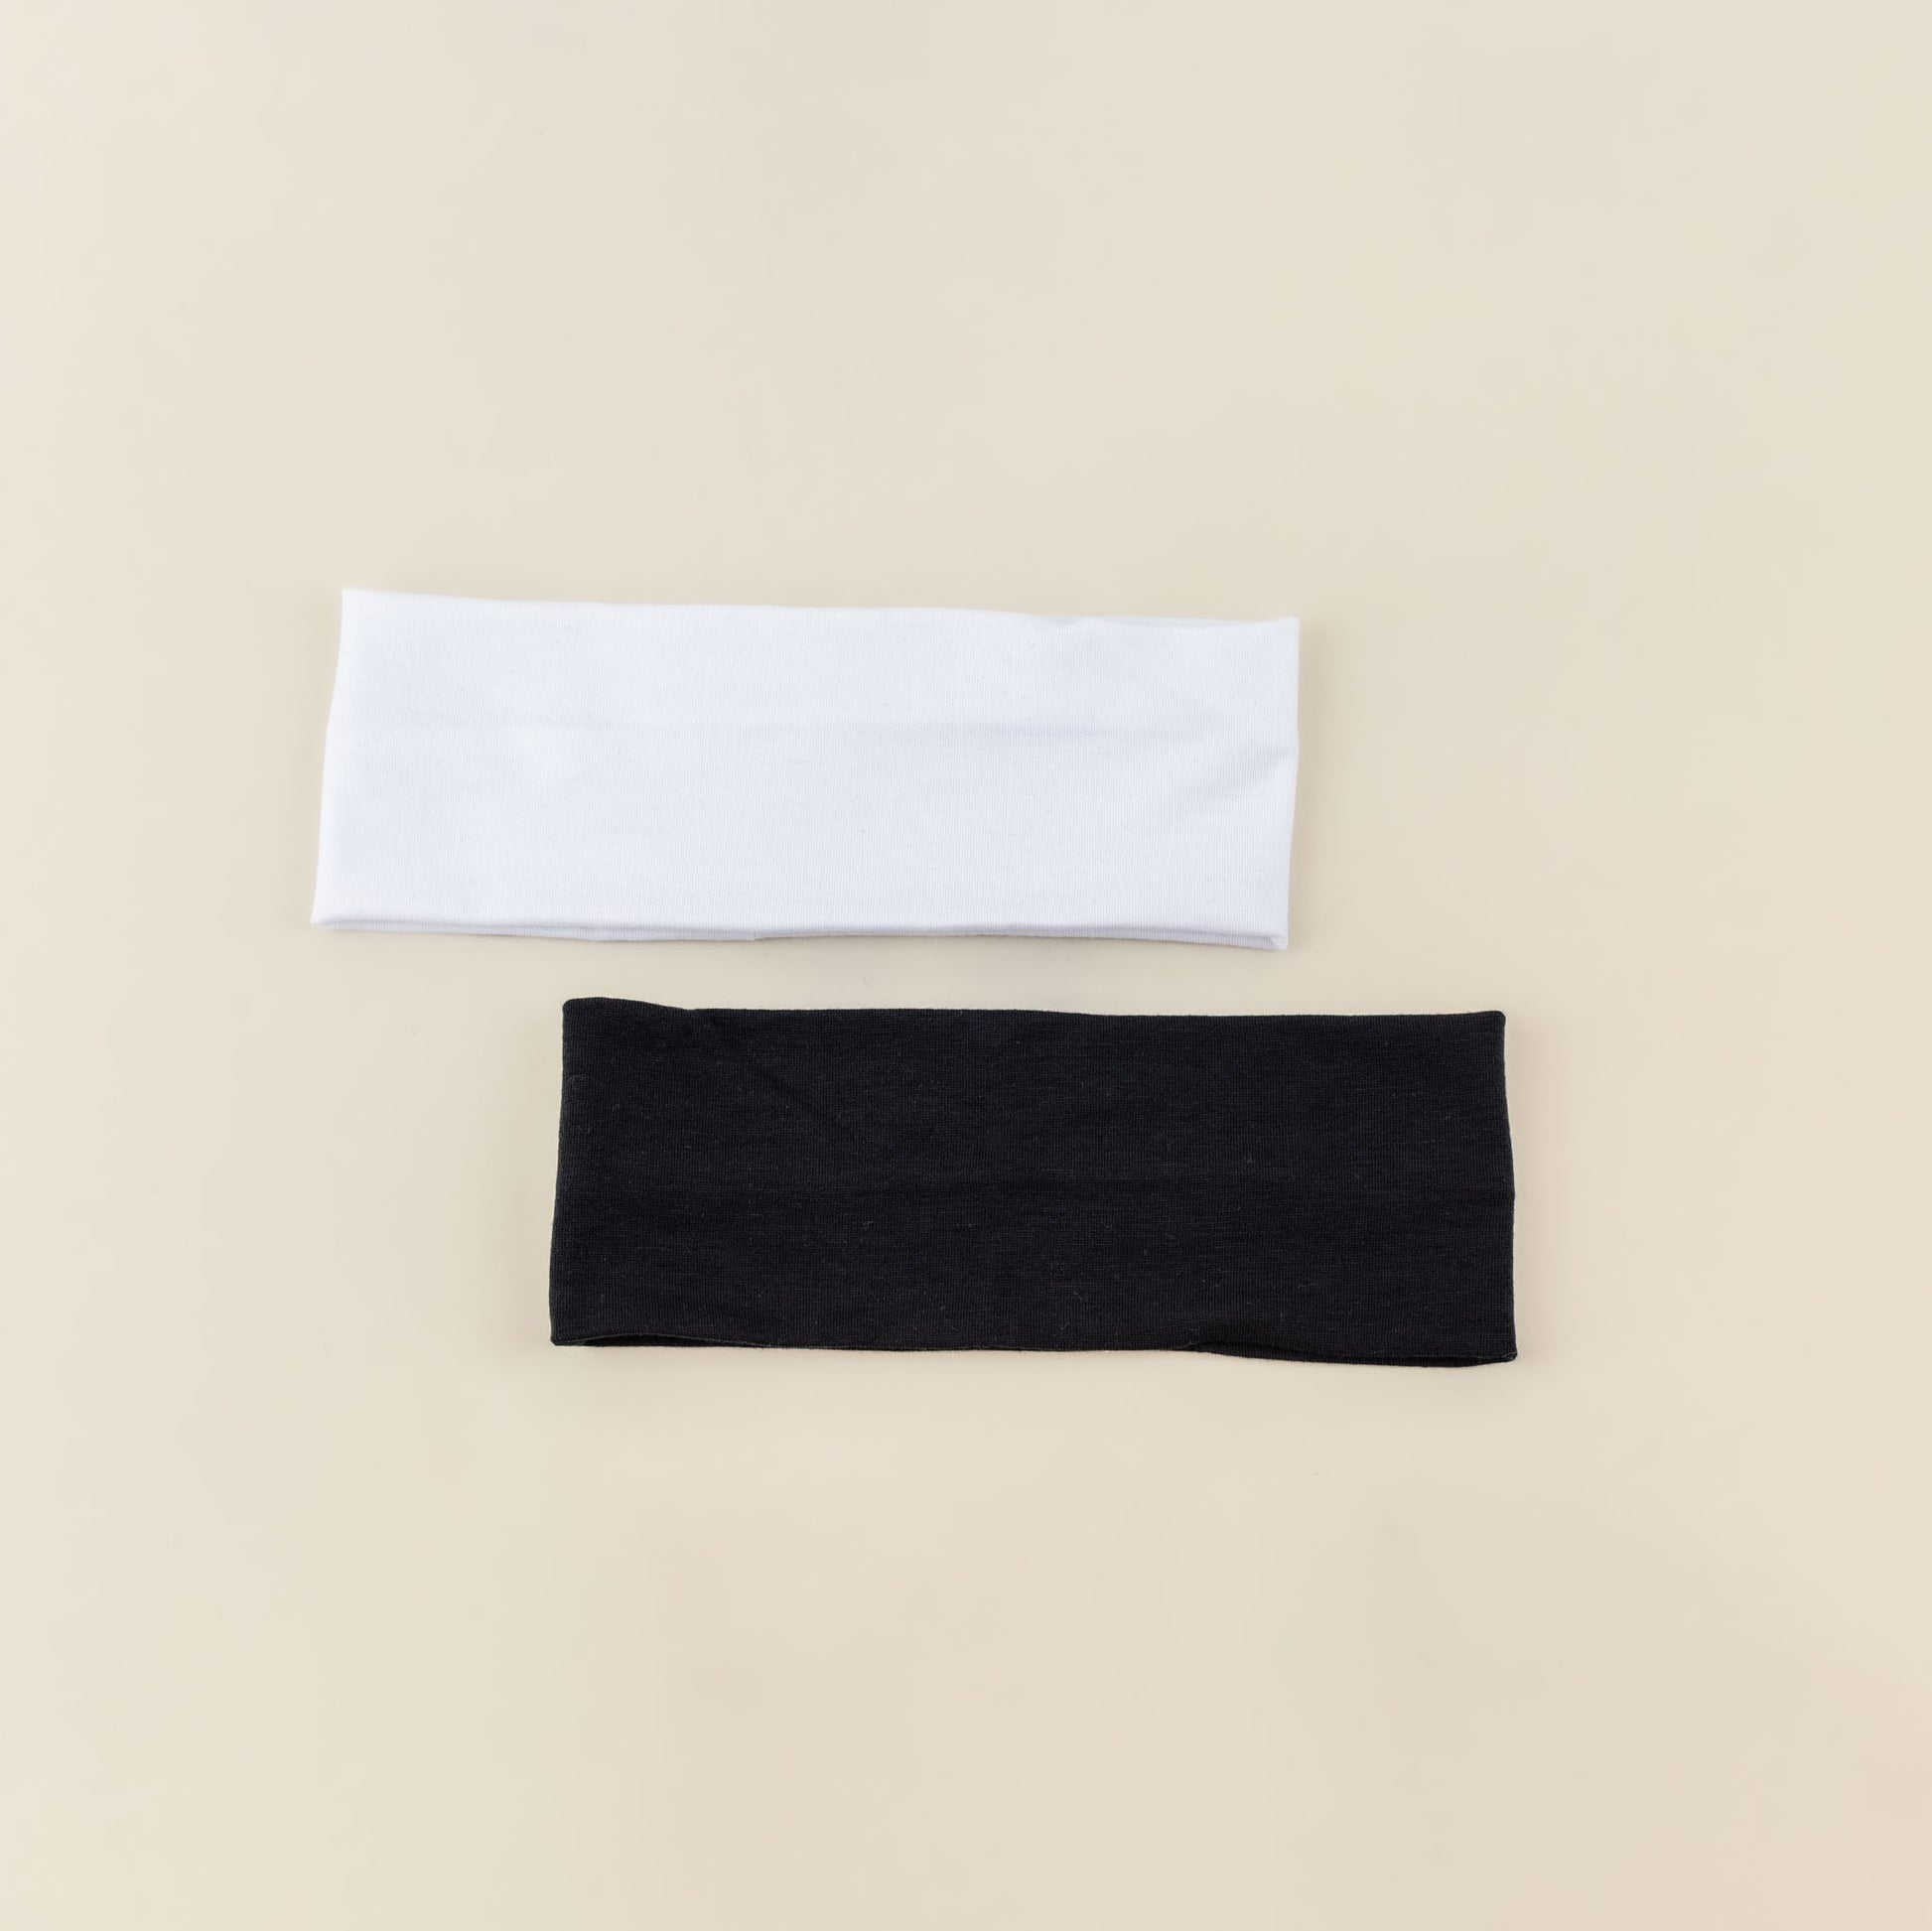 Bentițe de păr simple, lățime 7,5 cm, set 2 buc - Alb, Negru